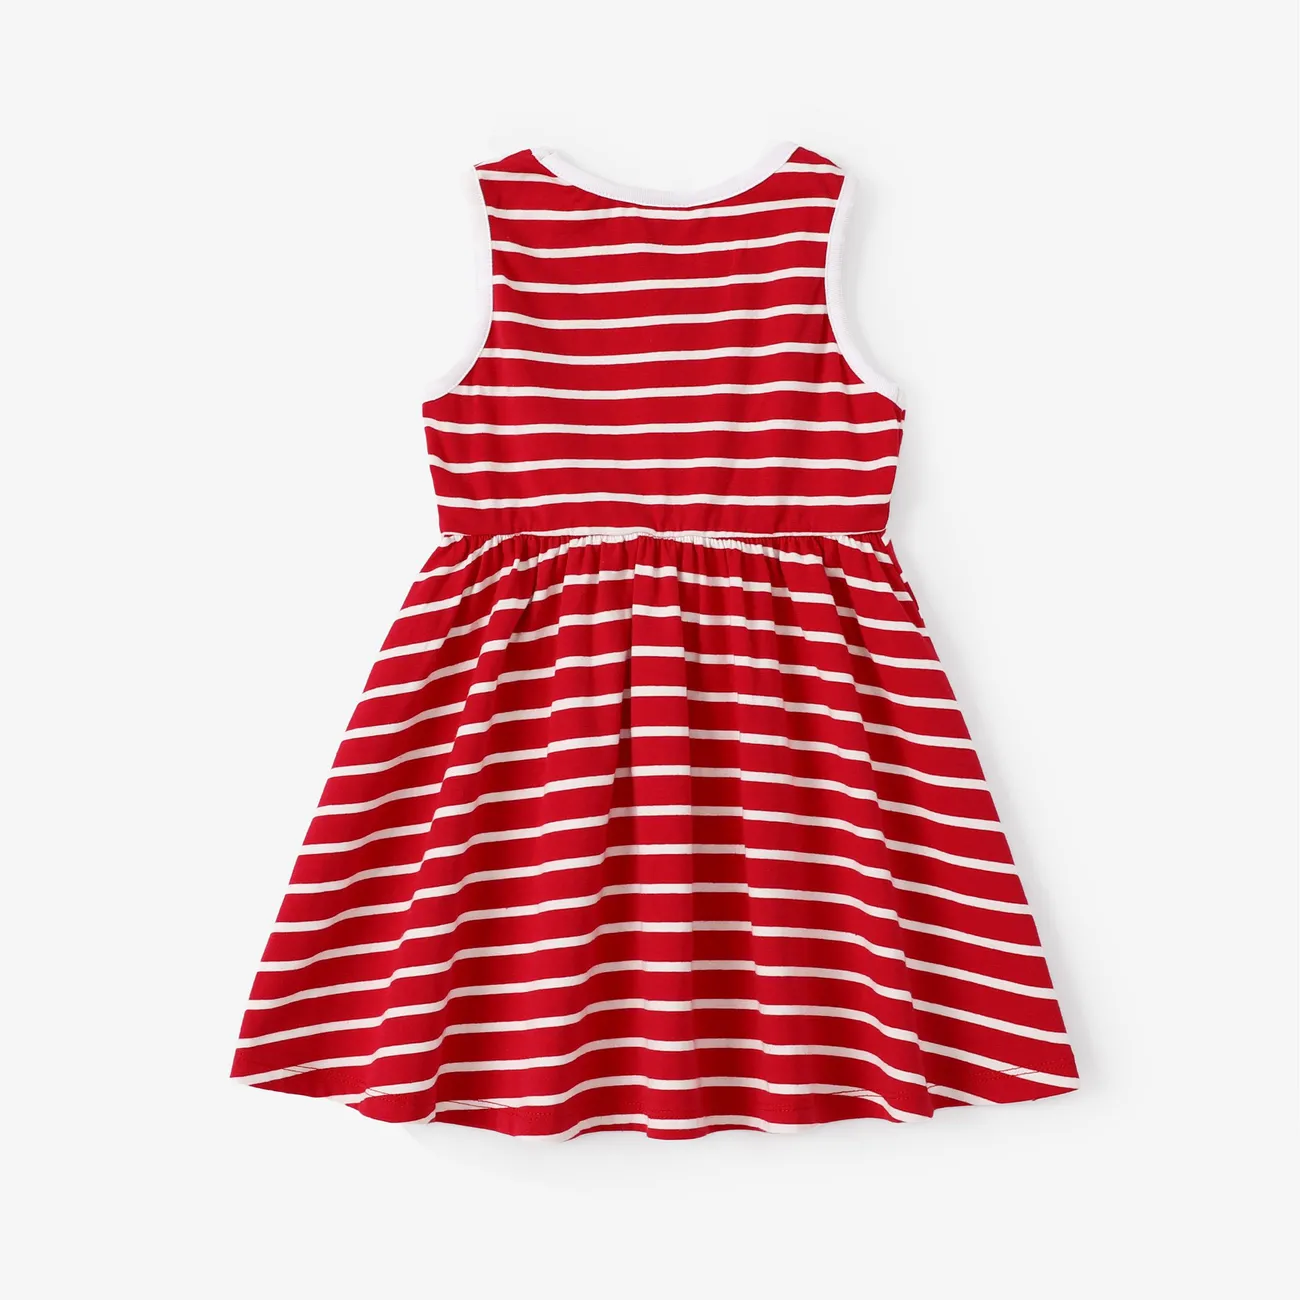 Toddler Girl Stripe Print Sleeveless Dress REDWHITE big image 1